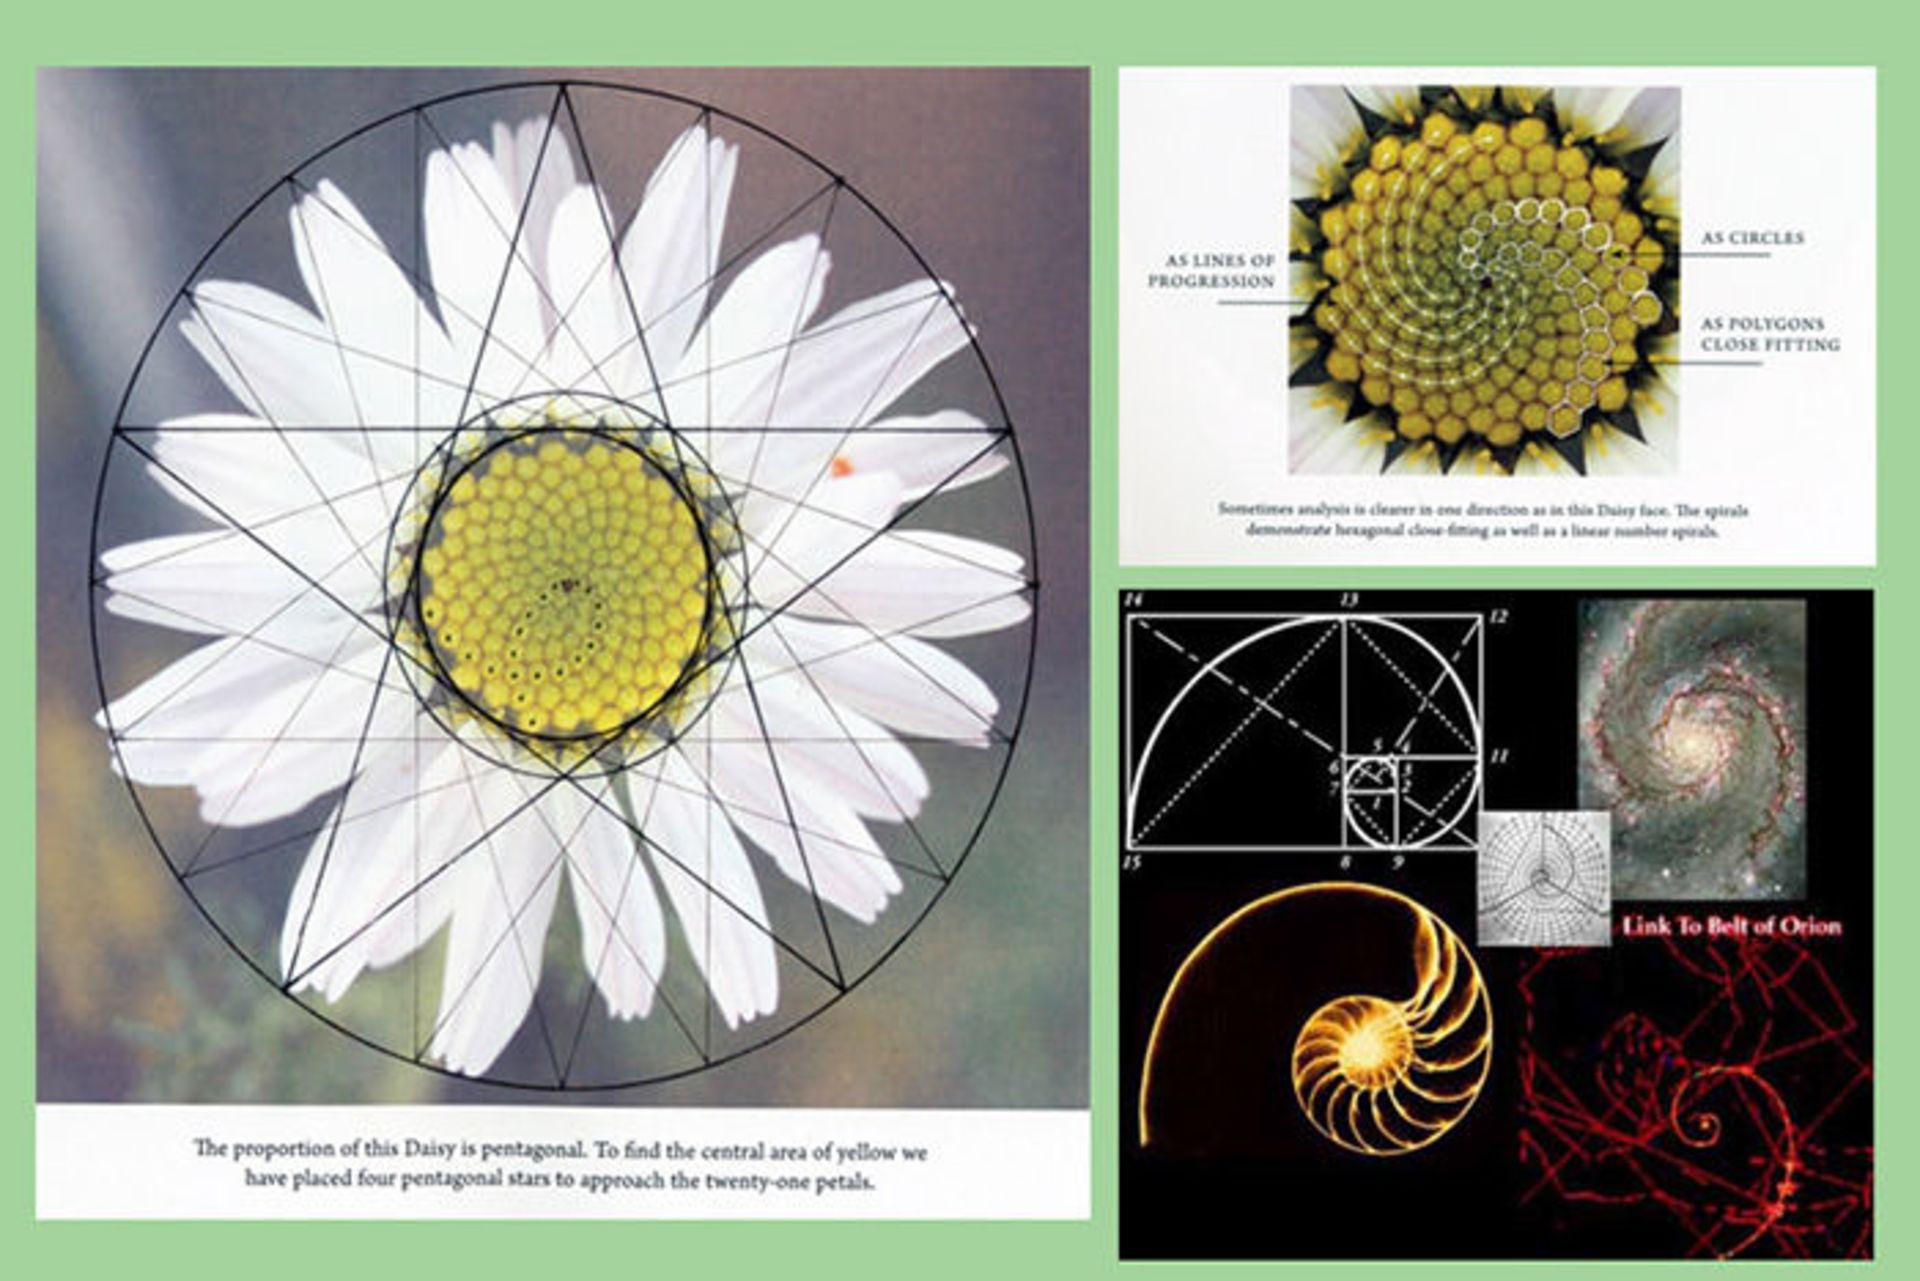 نظم شگفت انگیز گیاهان و نمایش اشکال متقارن هندسی